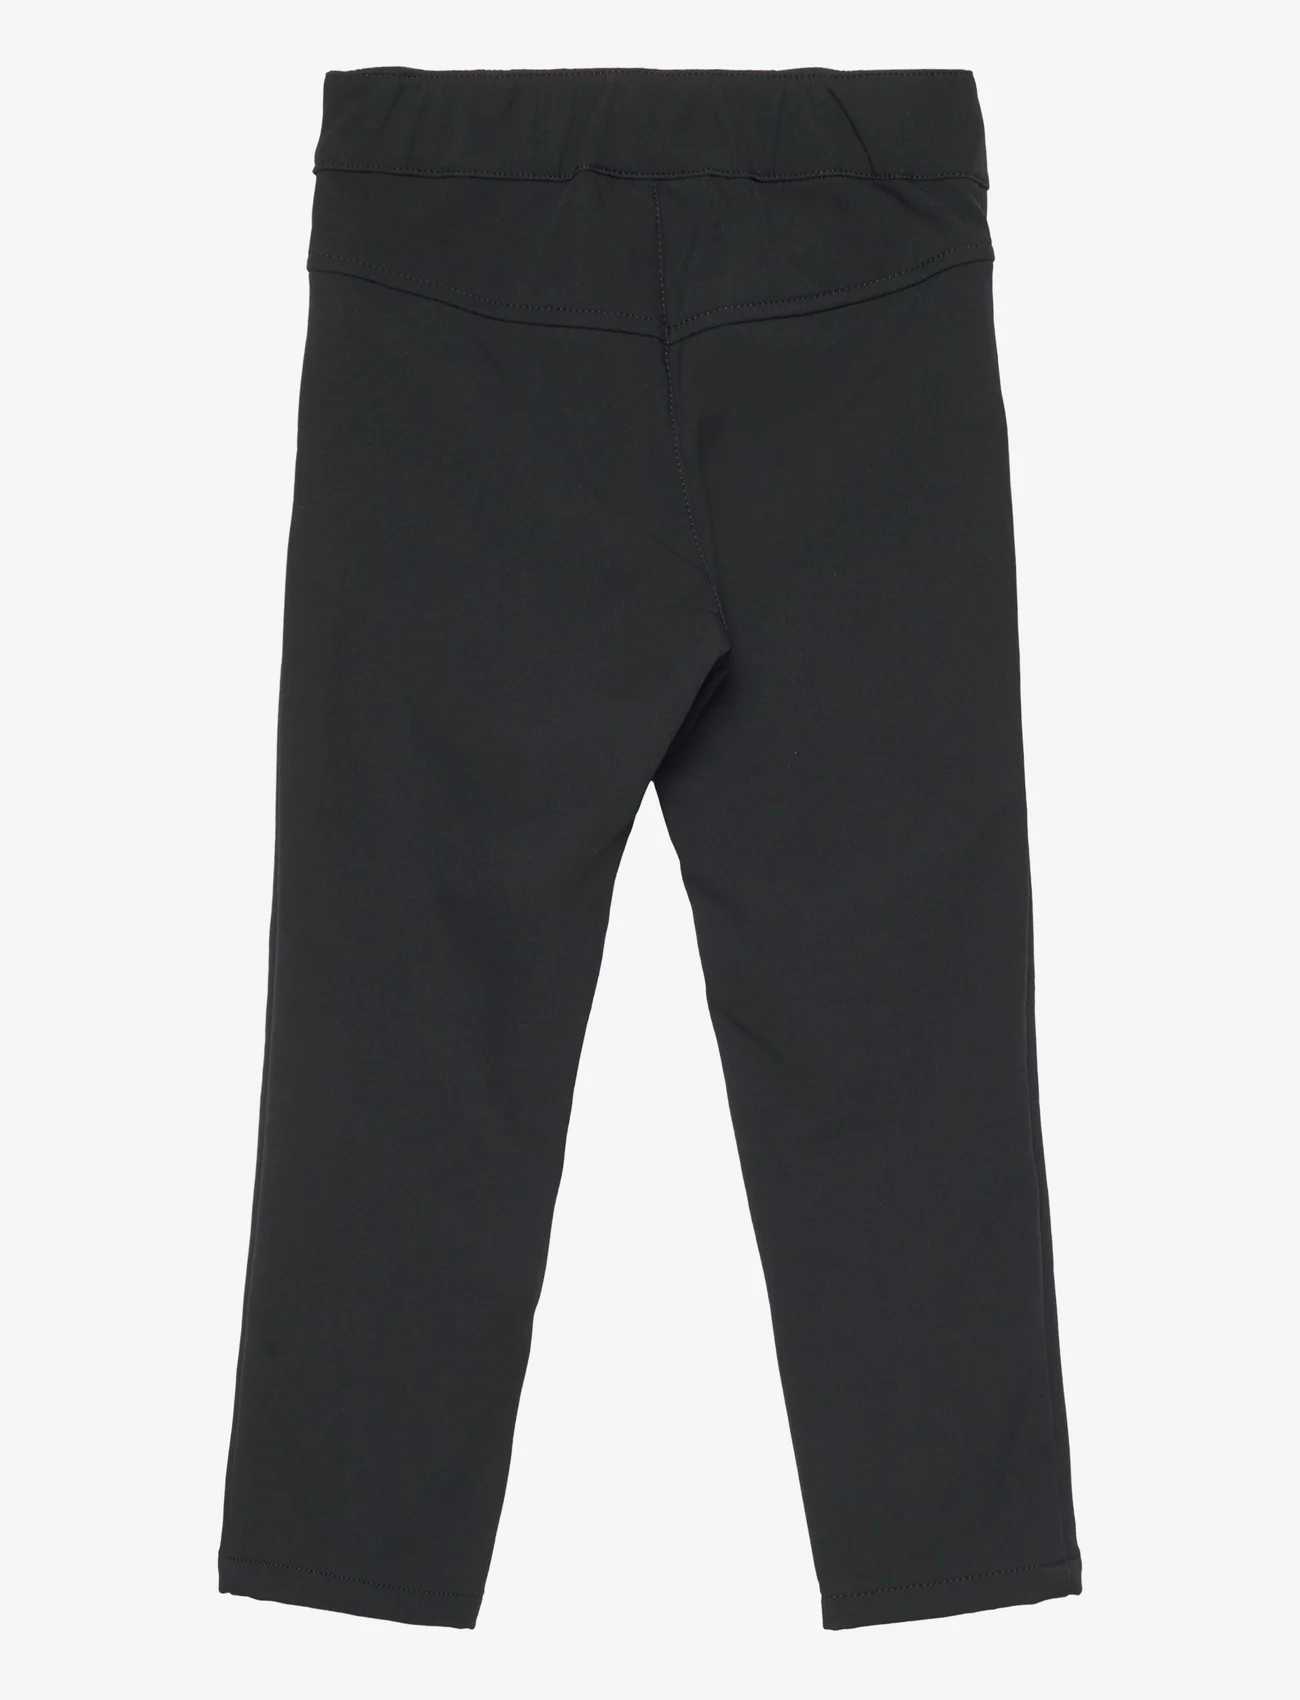 Reima - Softshell pants, Idea - kinder - black - 1